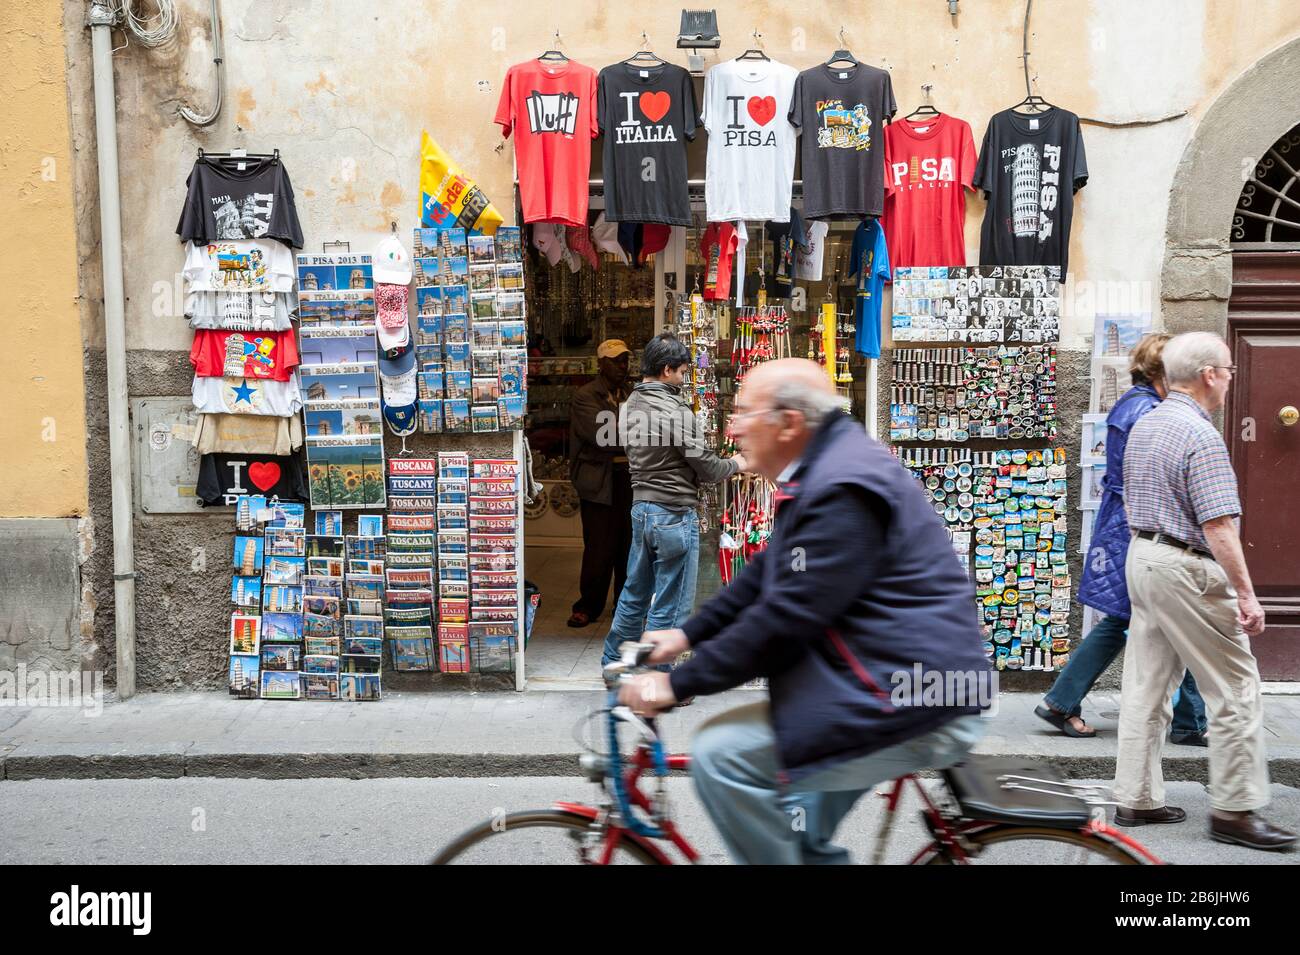 PISA, ITALIEN - 23. MAI 2012: Ein italienischer Radfahrer passiert einen Souvenirstand, der T-Shirts und Trinkets auf einer Straße zum Schiefen Turm verkauft. Stockfoto